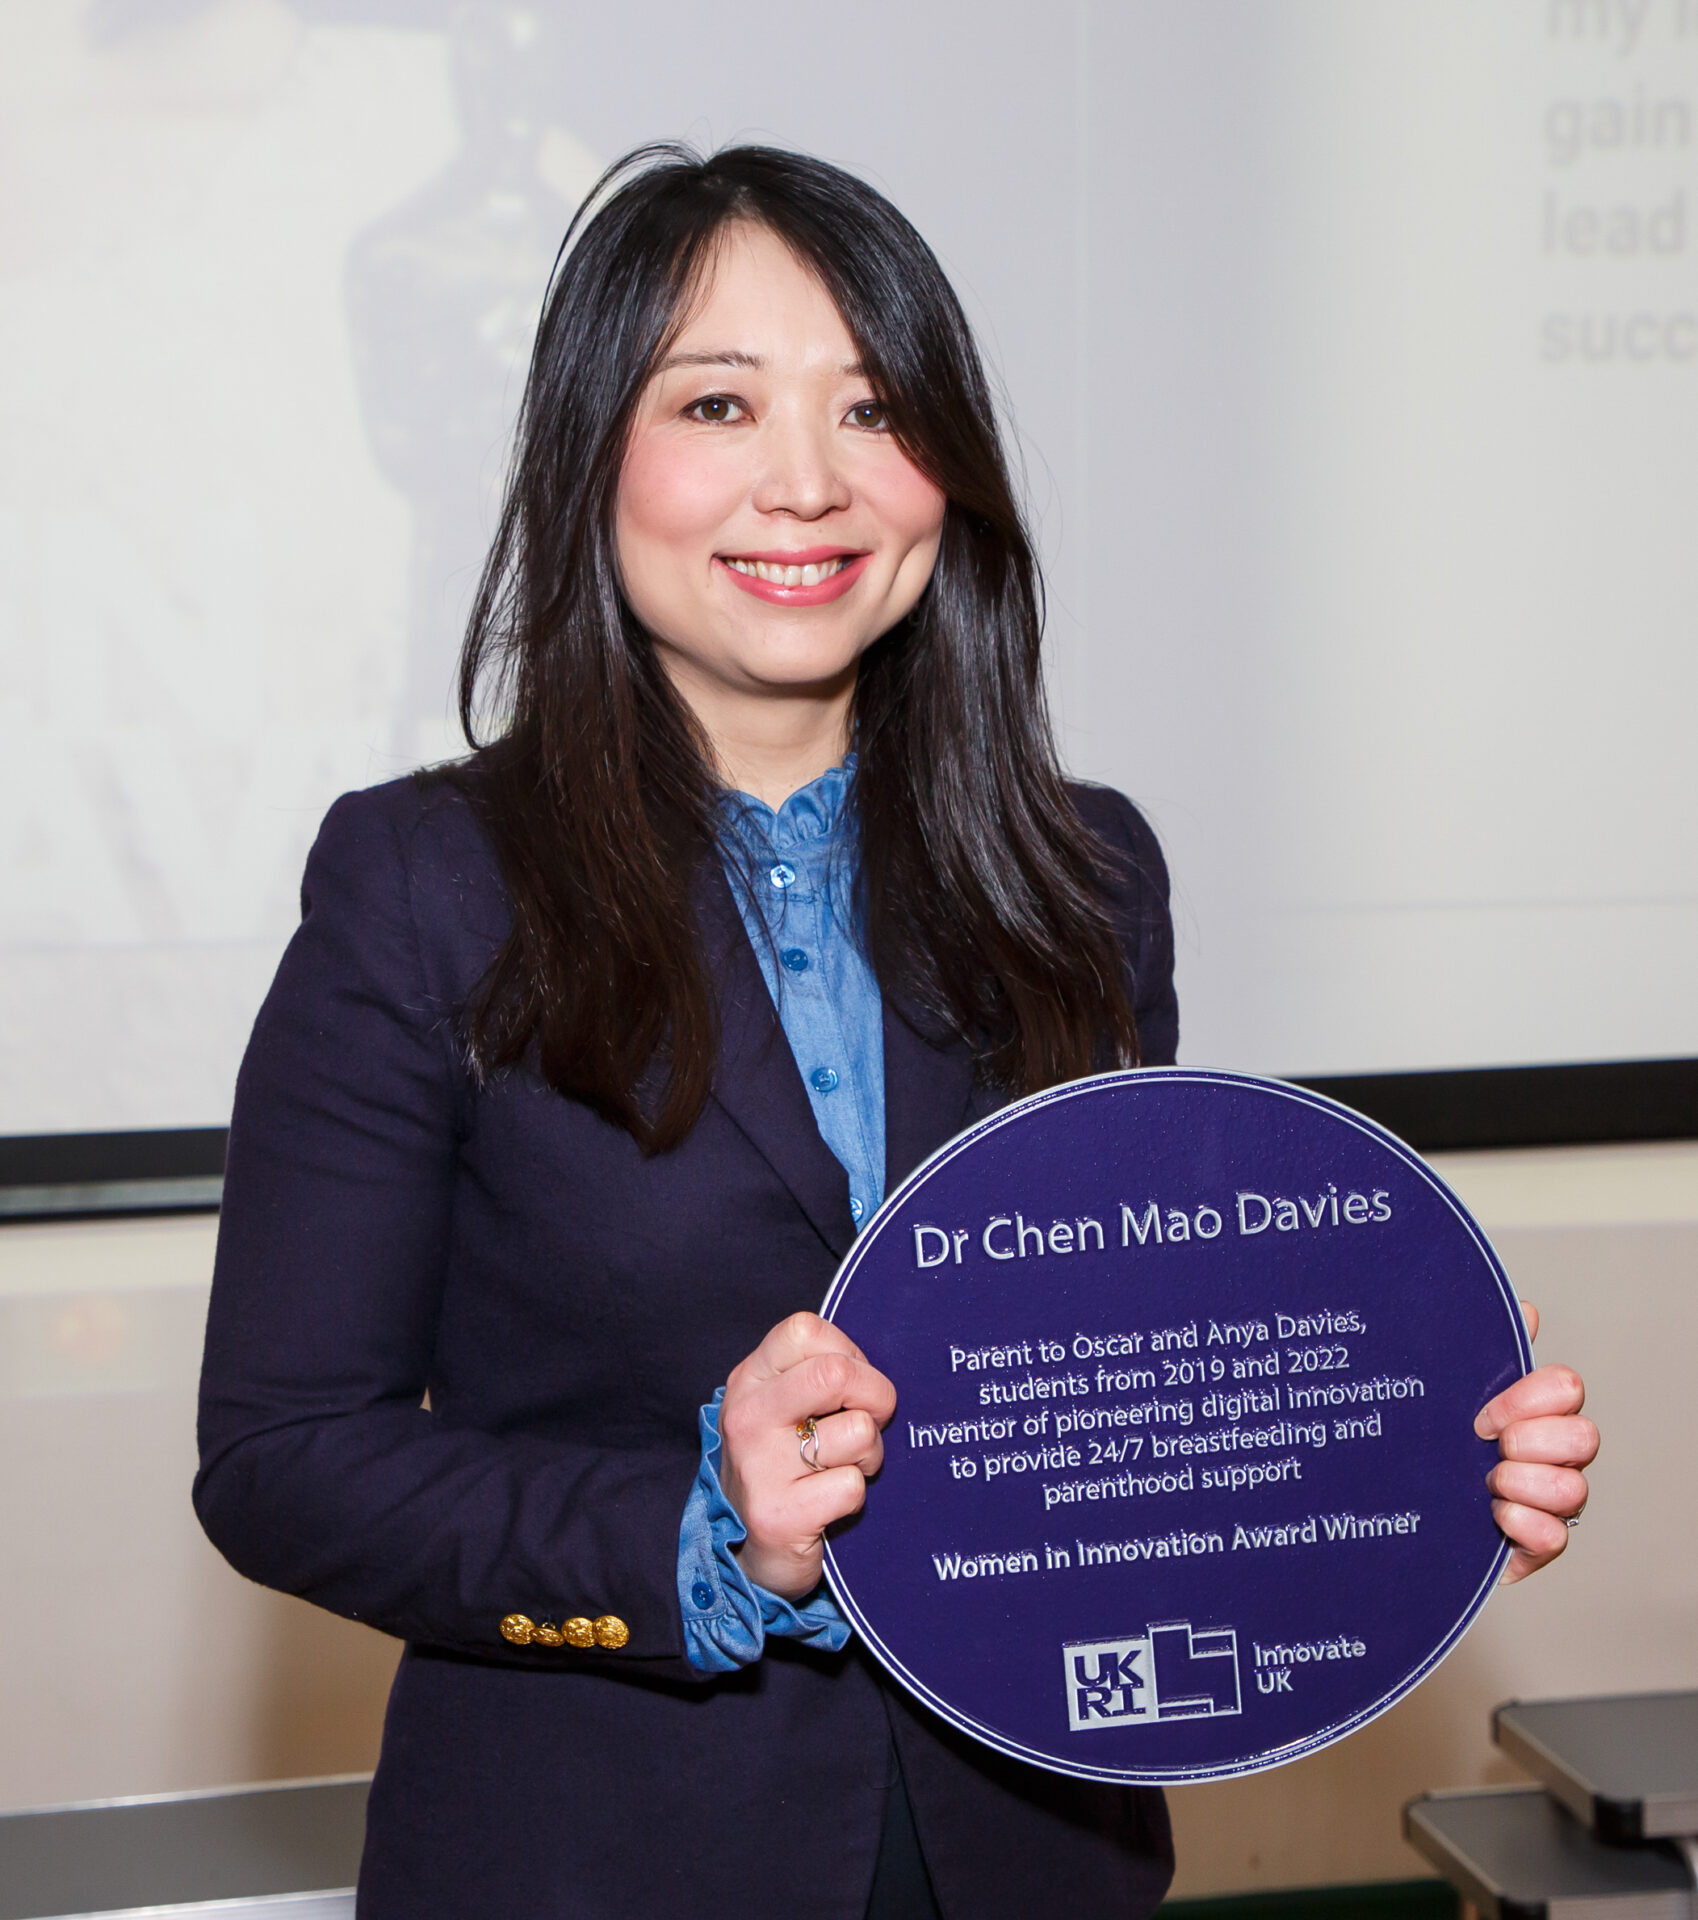 Meet the Innovator: Dr Chen Mao Davies